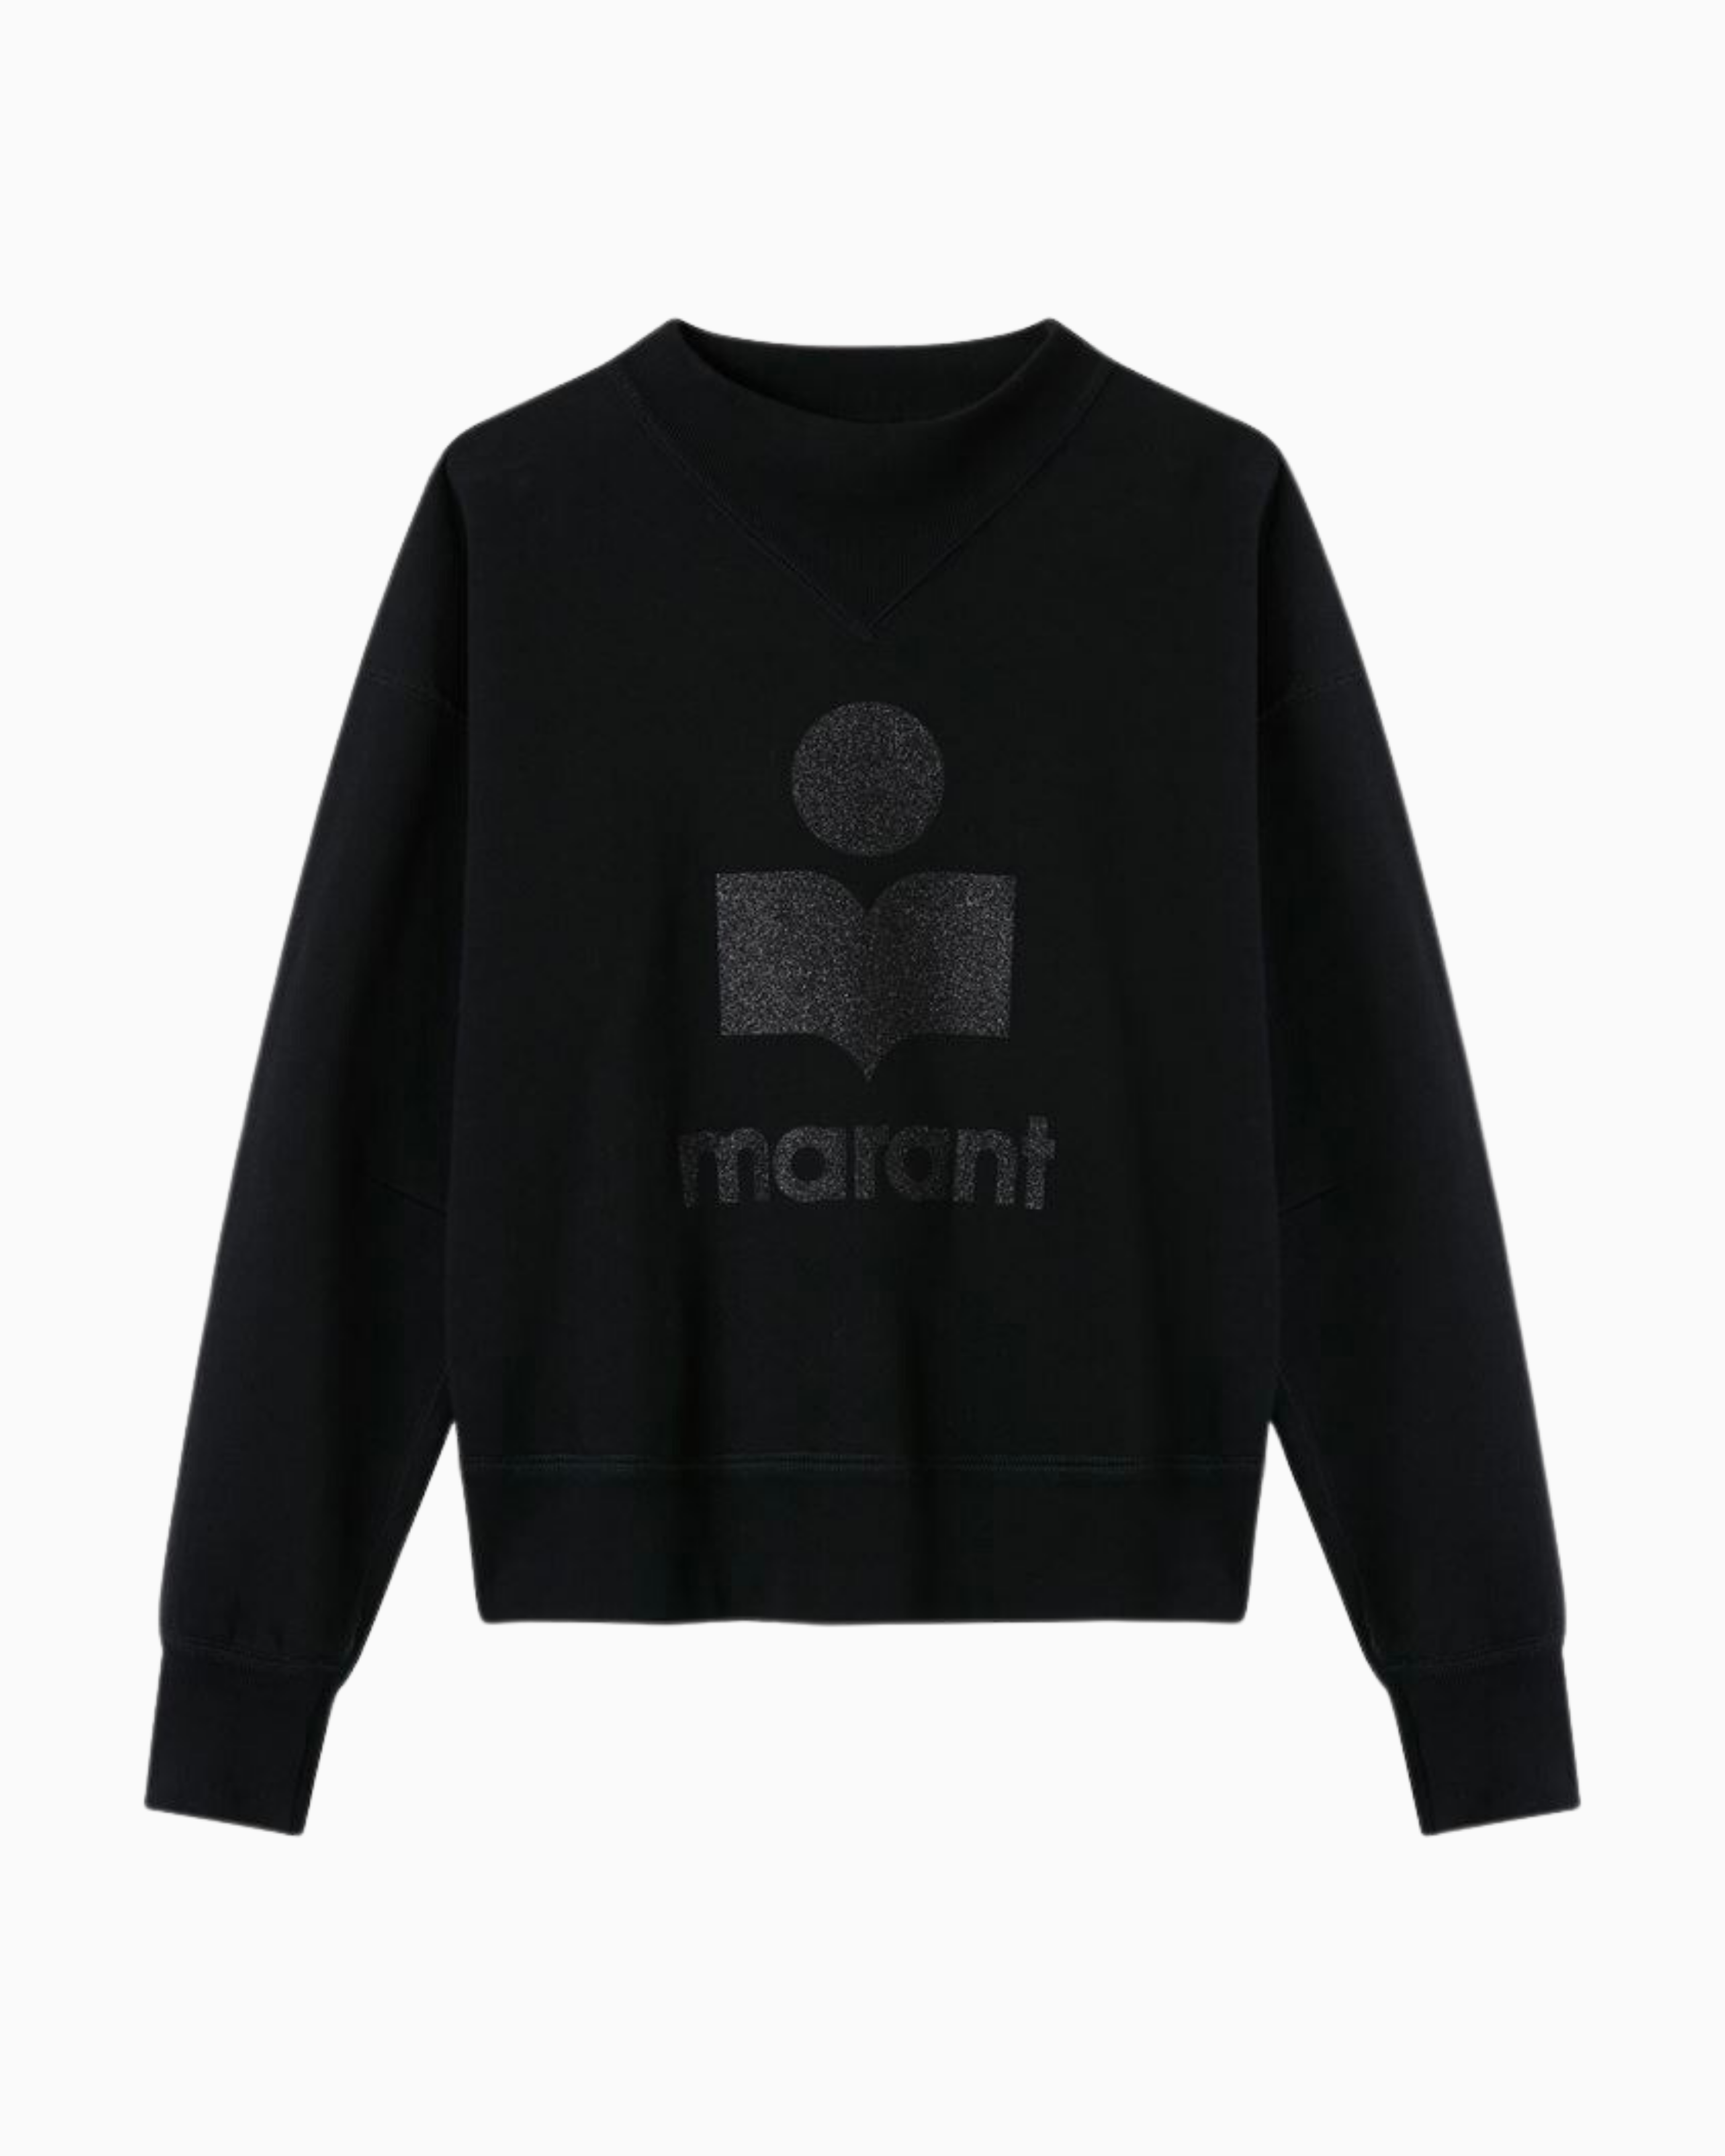 Isabel Marant Moby Logo Sweatshirt in Black Glitter